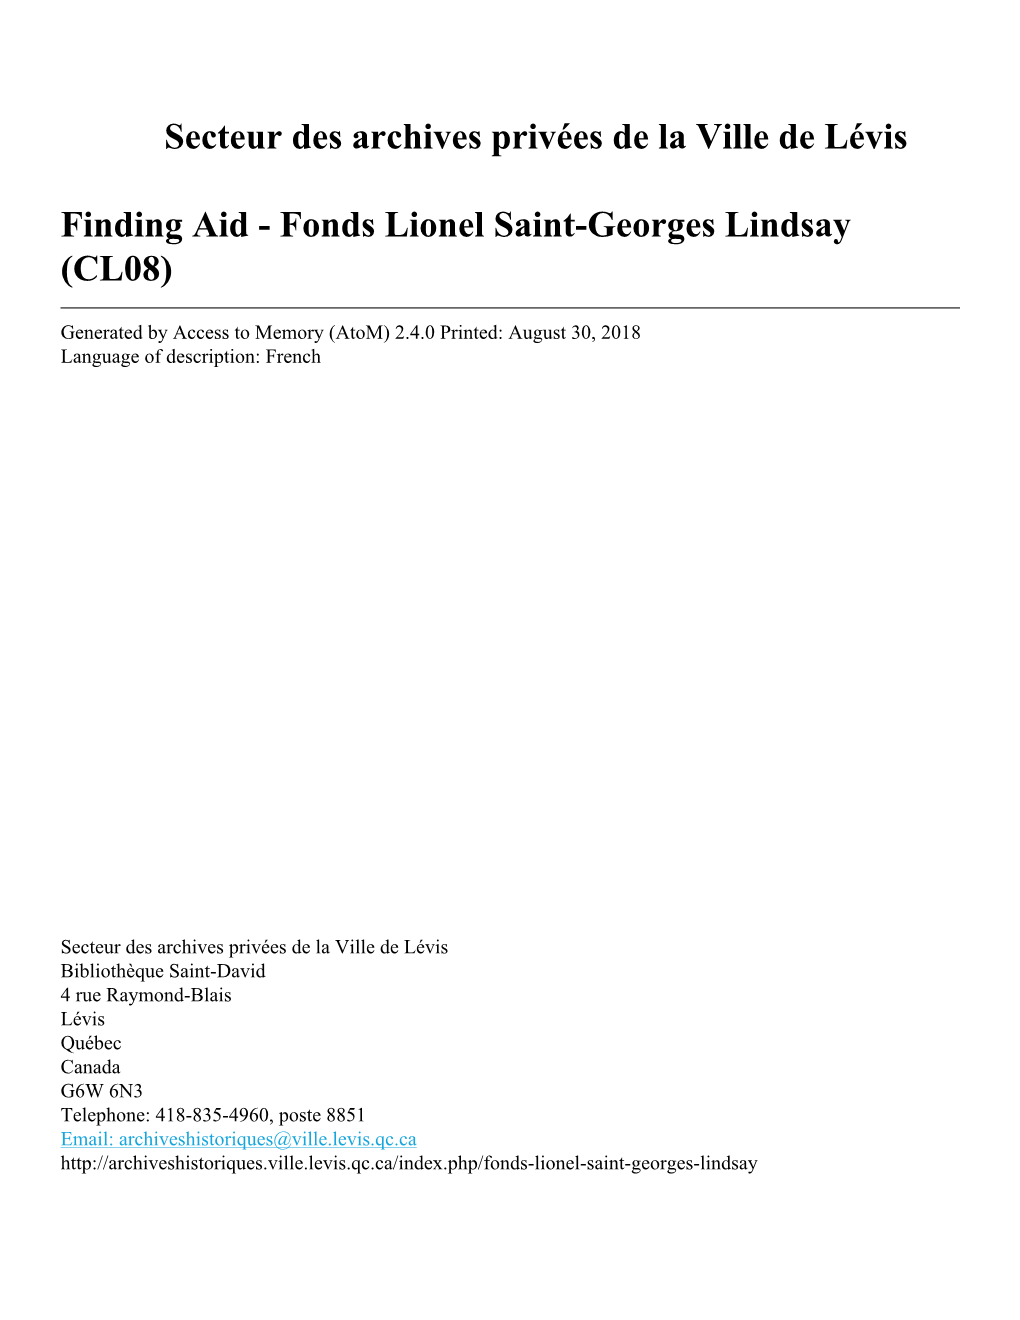 Fonds Lionel Saint-Georges Lindsay (CL08)